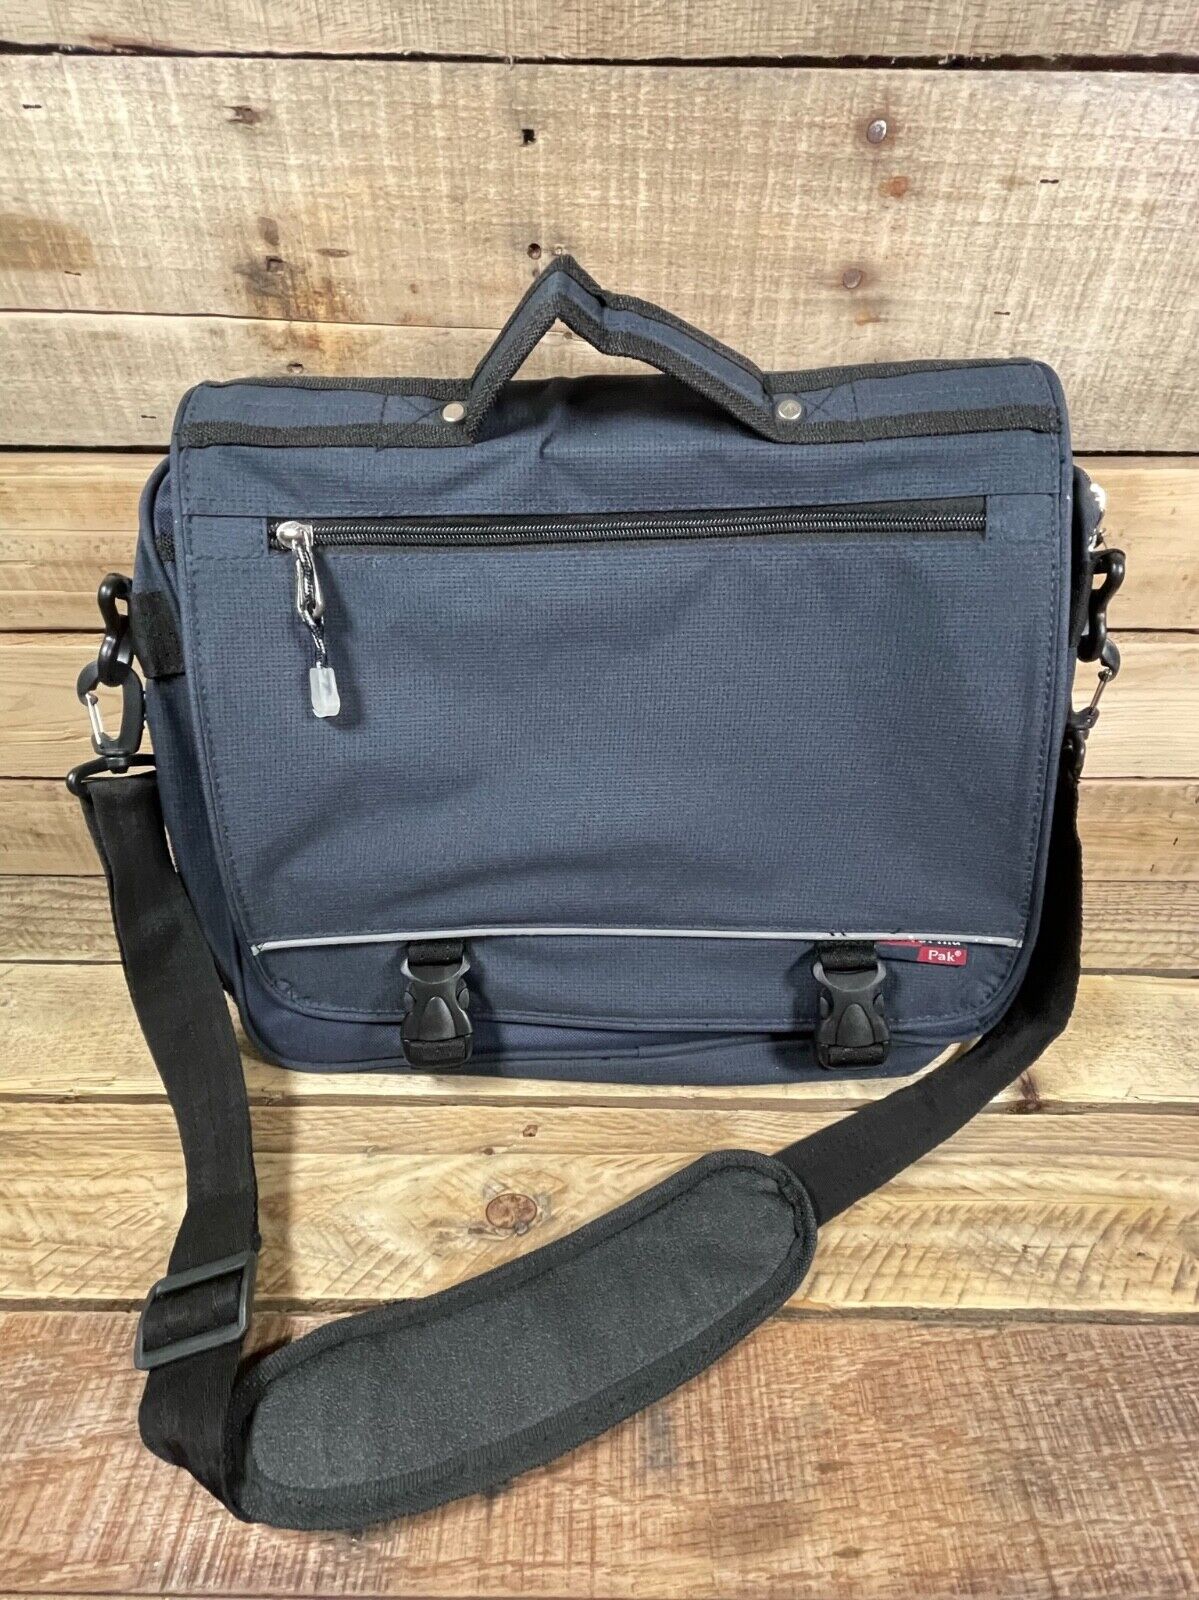 Cal Pak California Shoulder Bag Laptop Duffle 17x14” Large Tote Travel Backpack